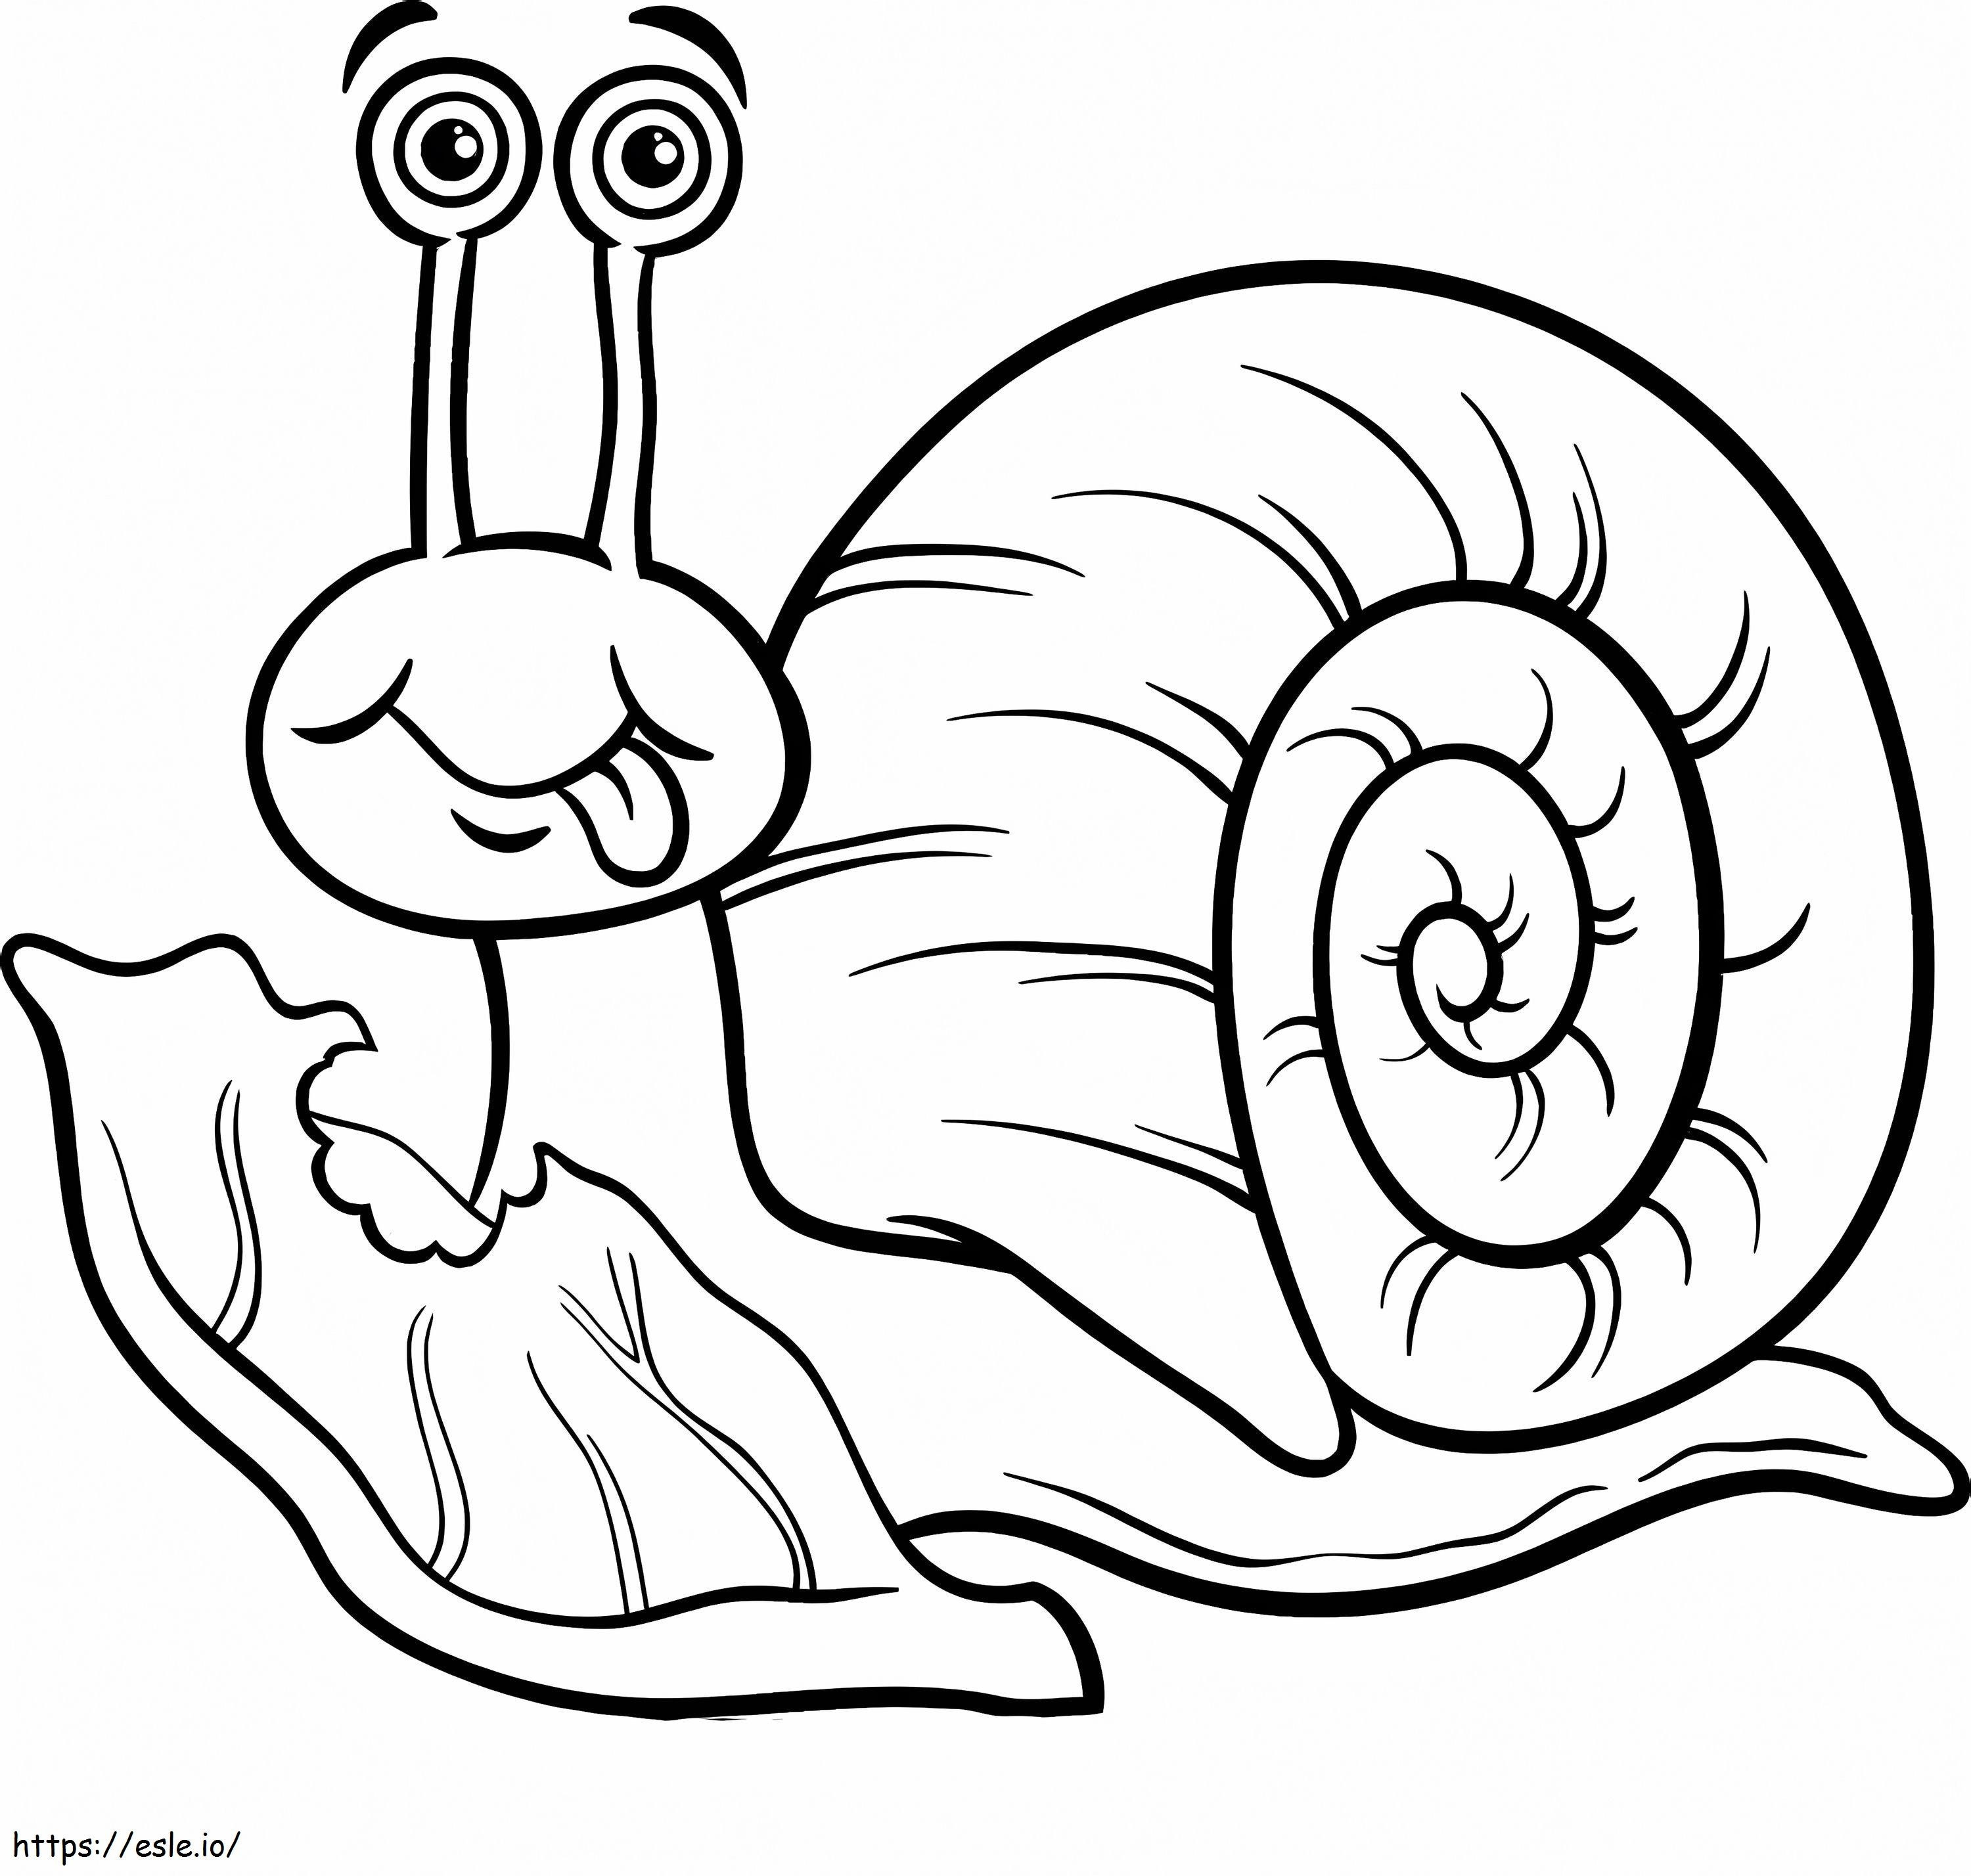 Coloriage Feuille mangeant un escargot à imprimer dessin